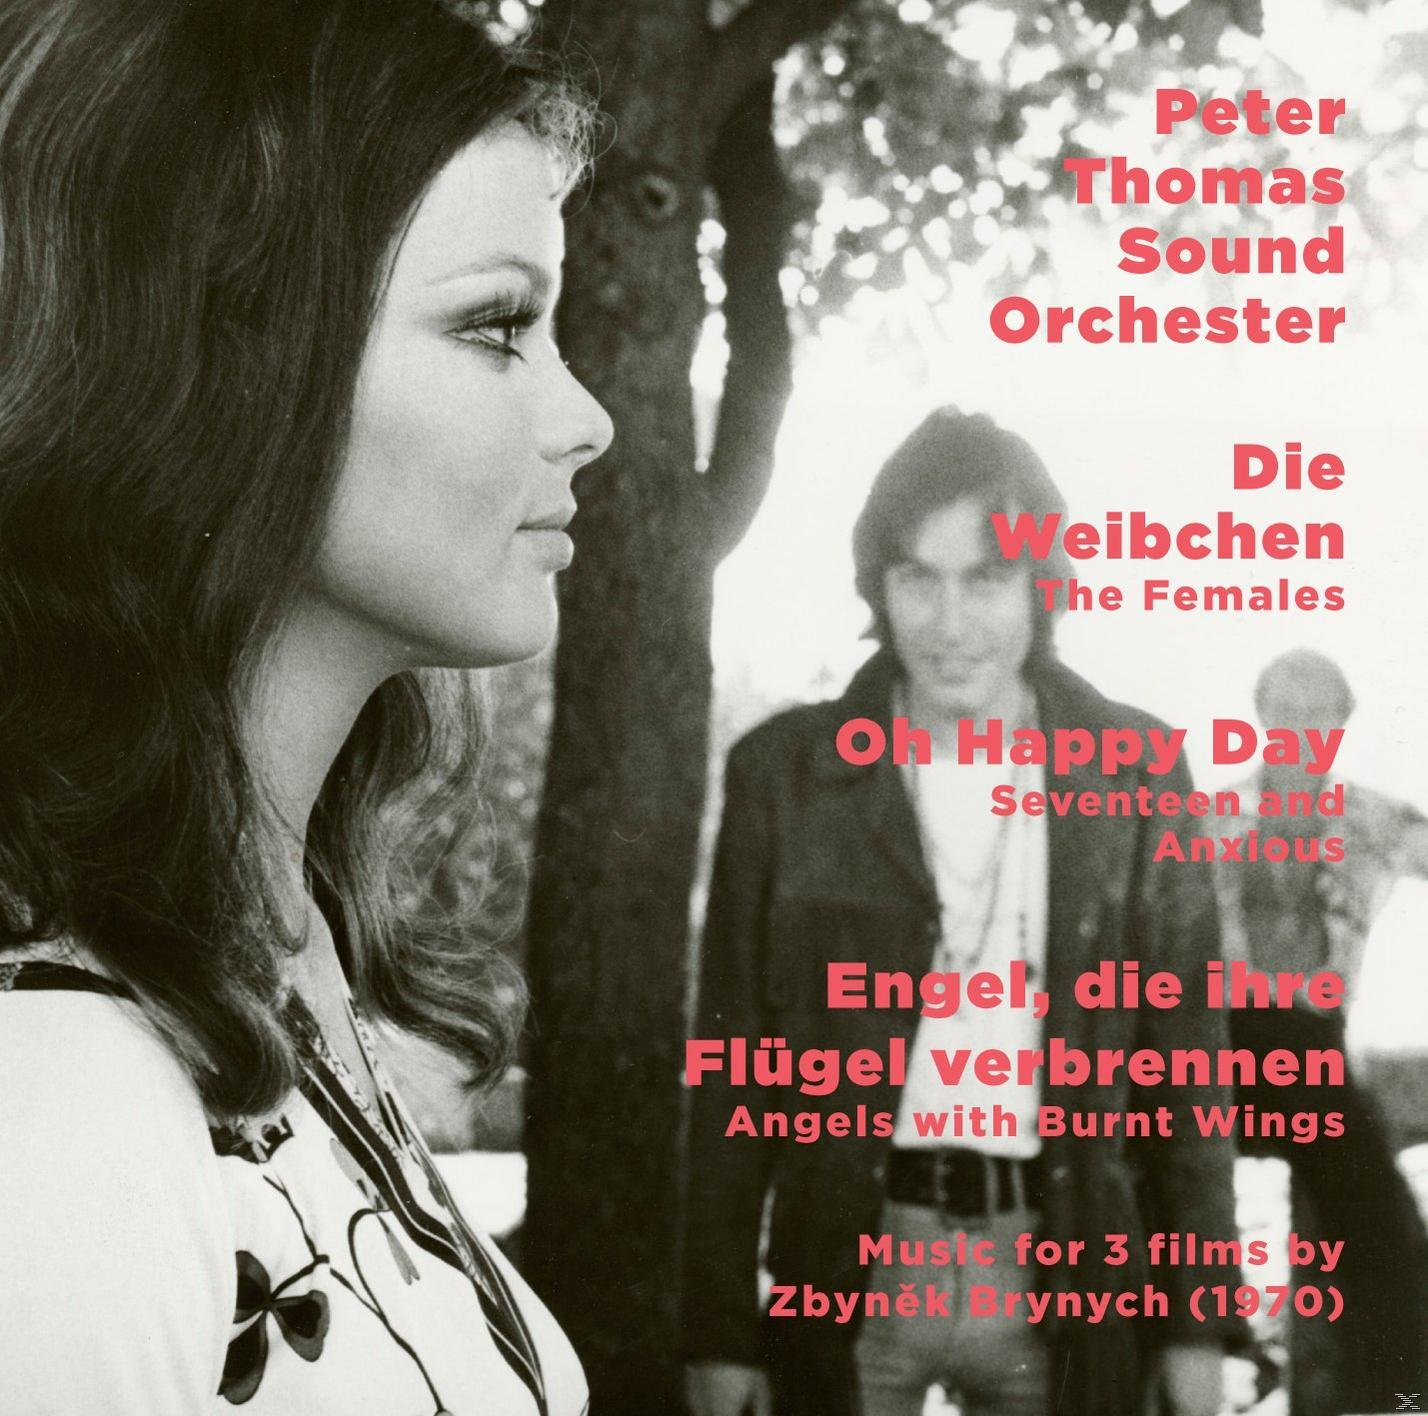 Peter Thomas Sound Verbrennen Ihre Happy - (CD) Orchester Flügel - Die Die Day/Engel, Weibchen/O